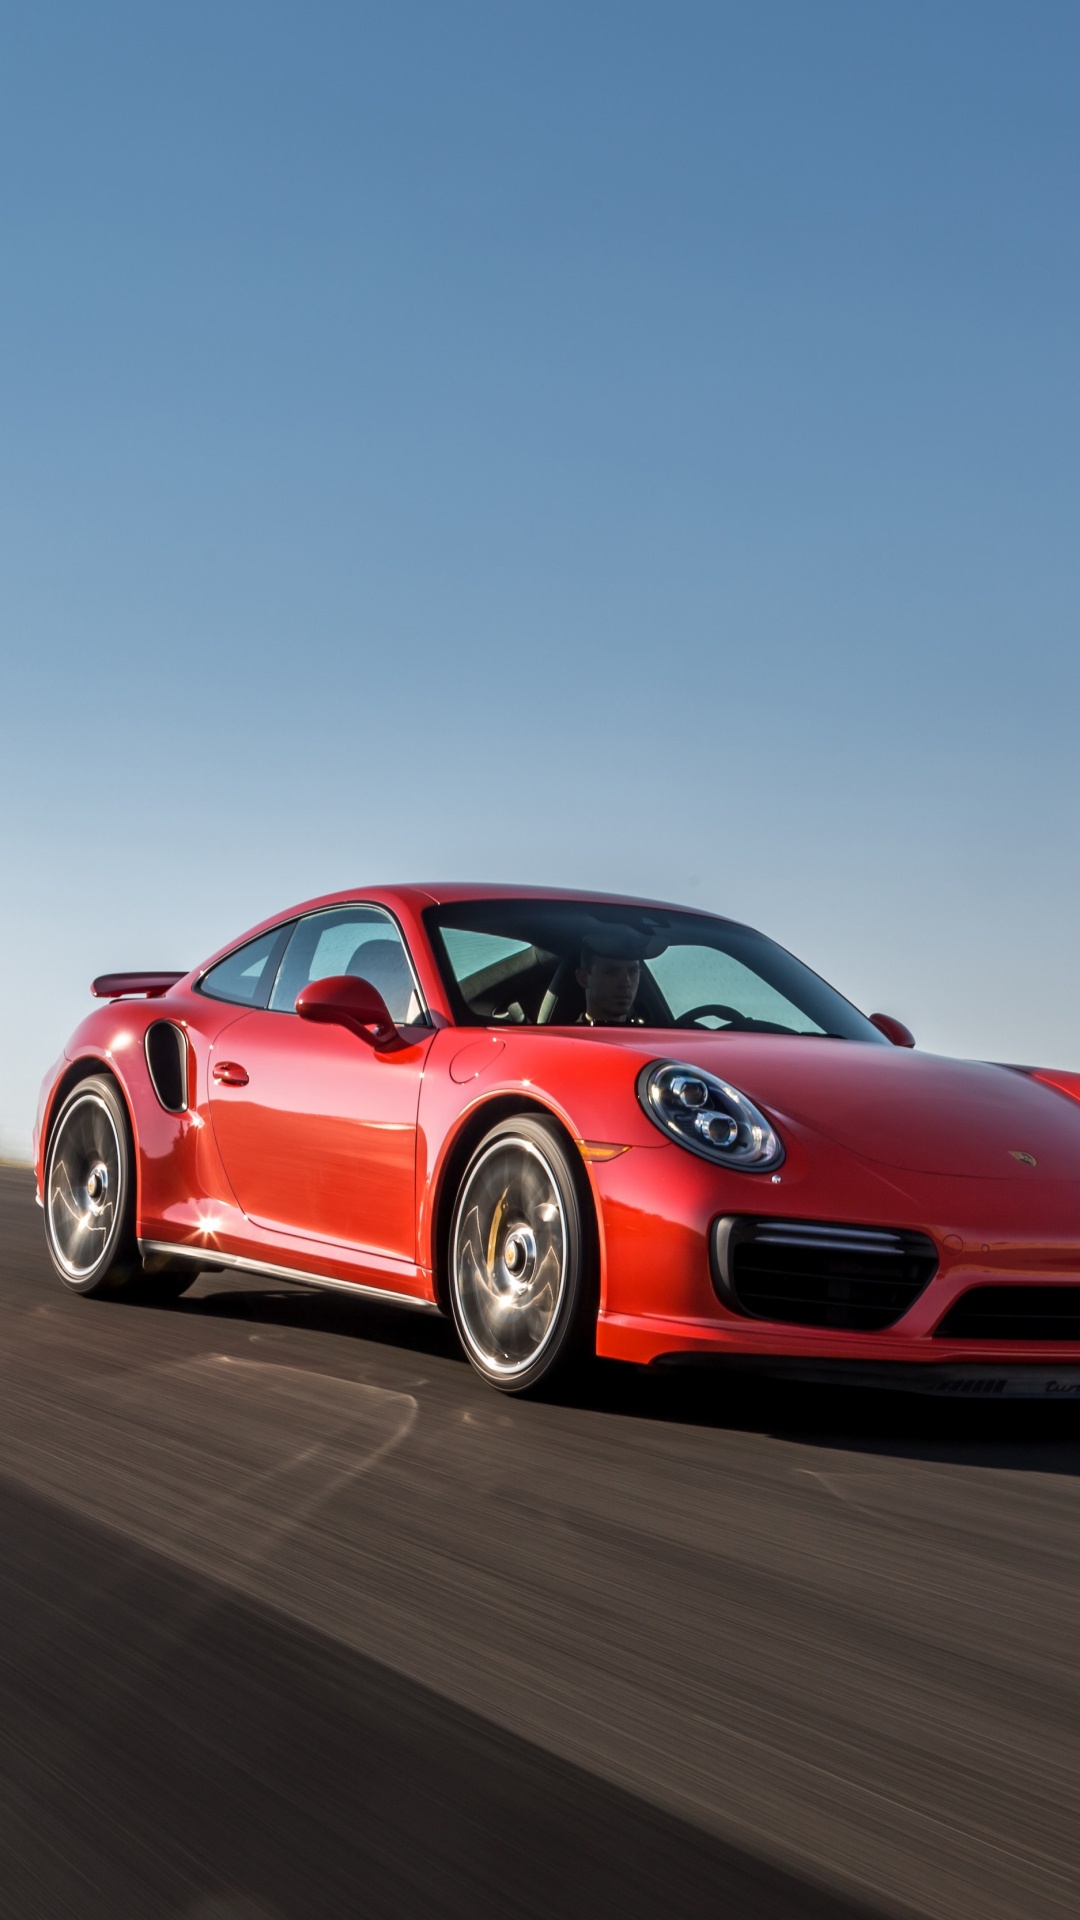 Porsche 911 Rouge Sur Route Pendant la Journée. Wallpaper in 1080x1920 Resolution